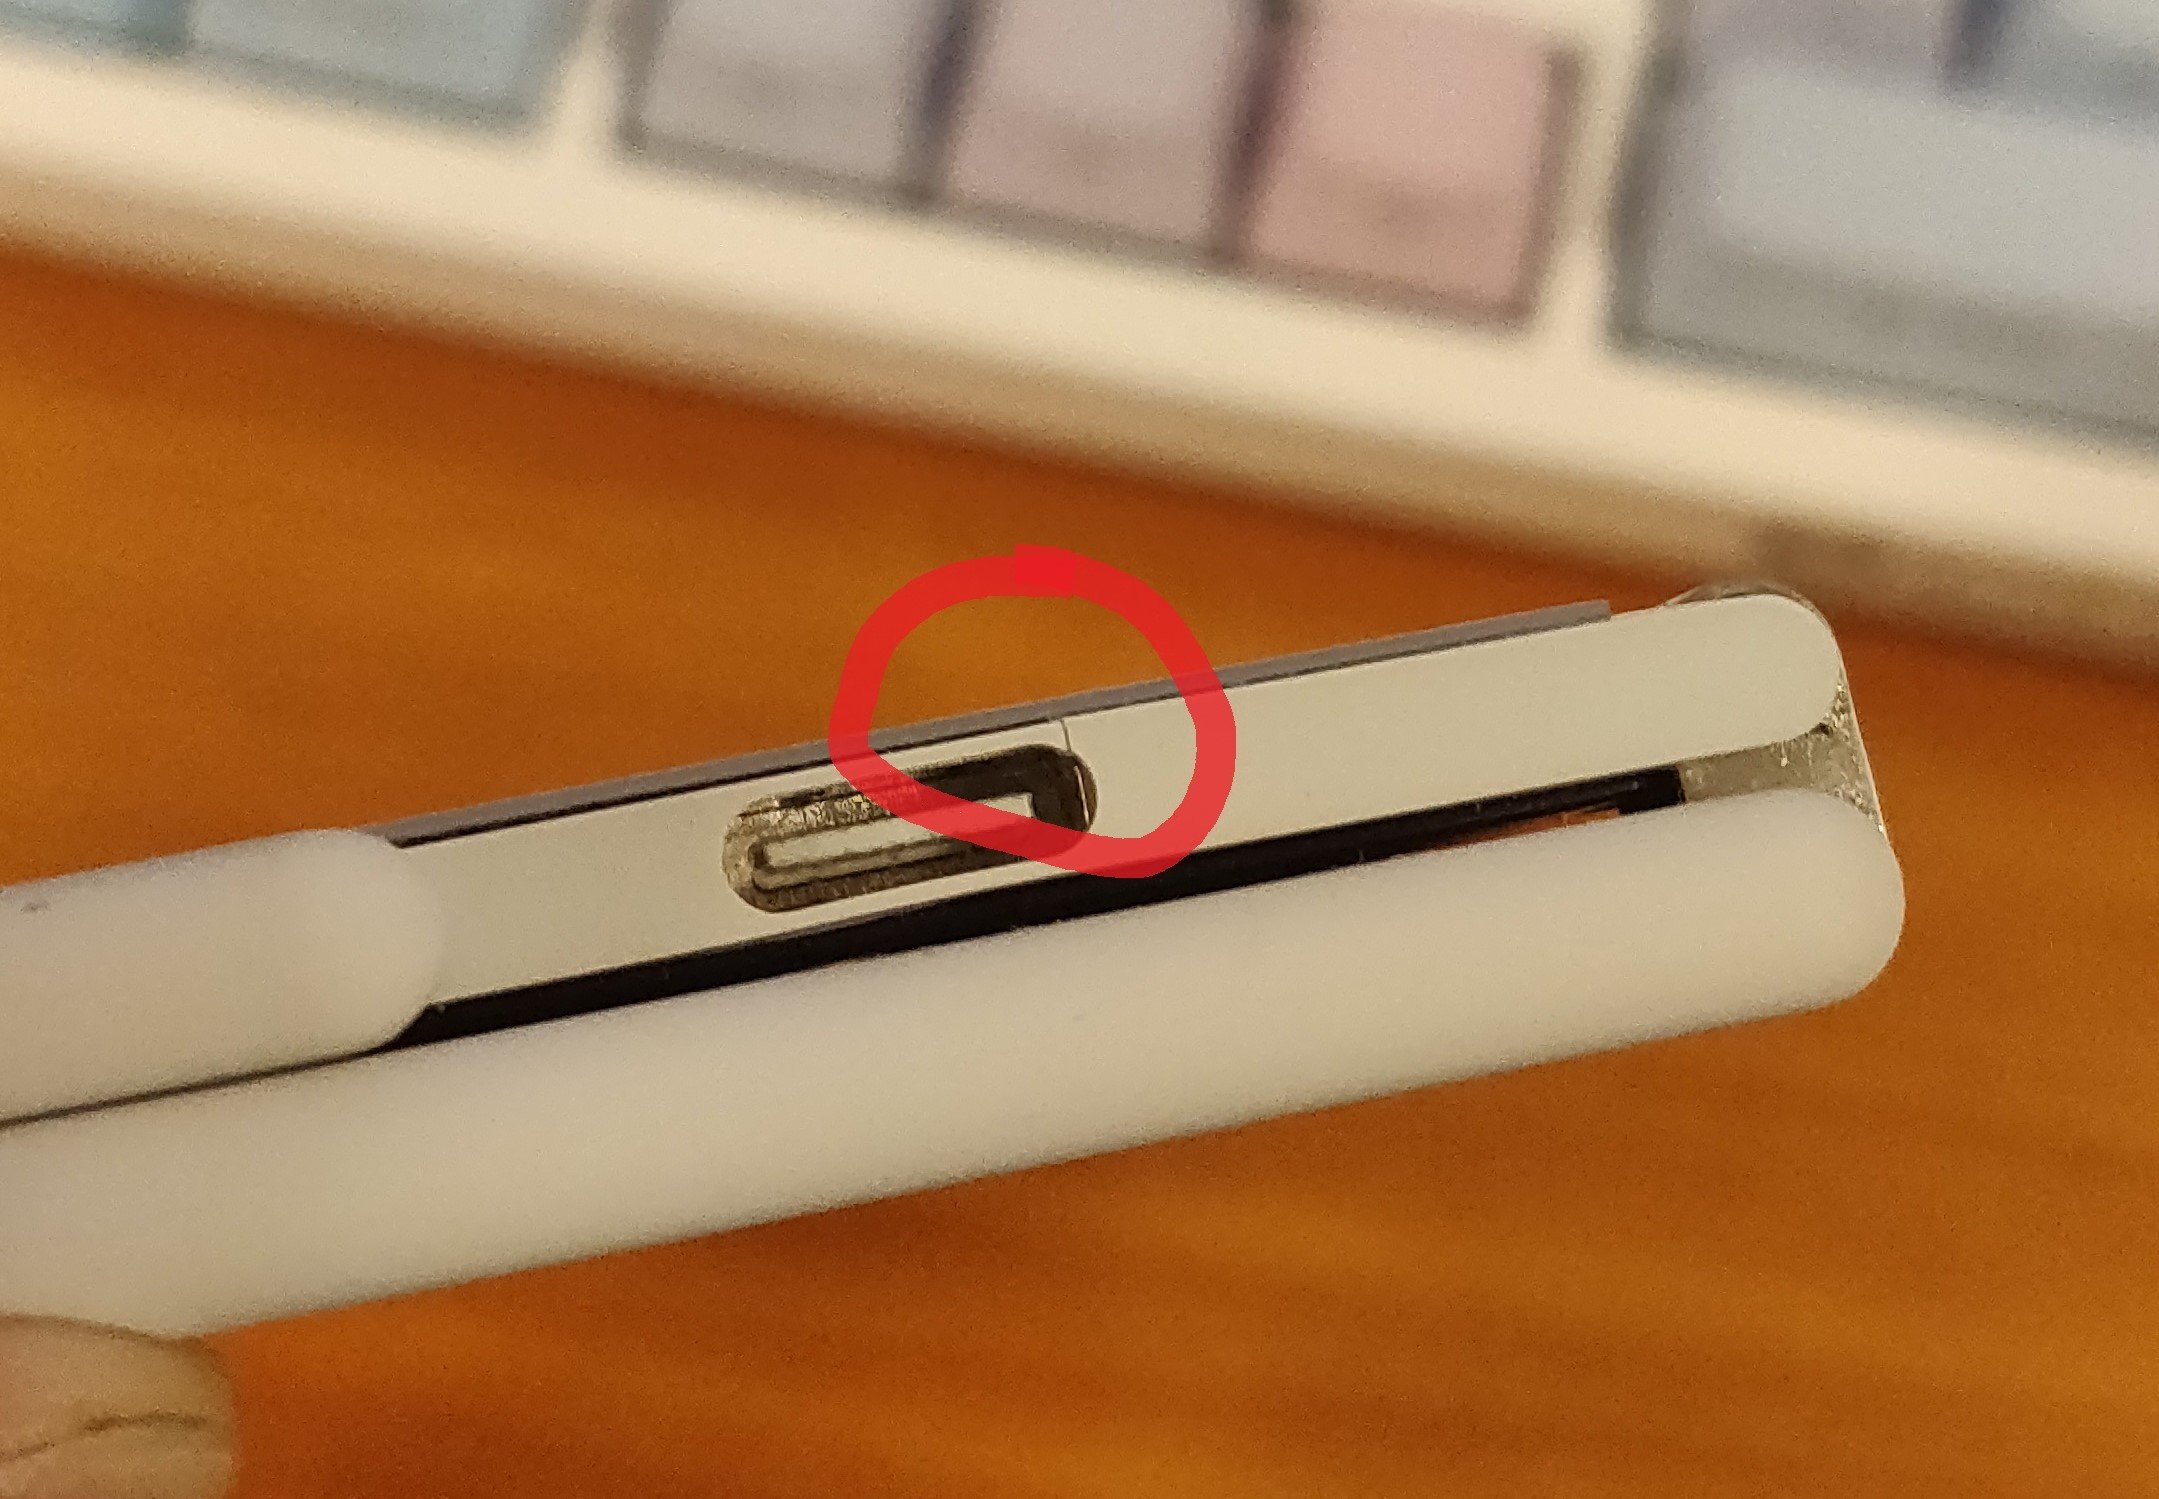 Nhiều người báo phần nhựa quanh cổng USB của Surface Duo bị bể